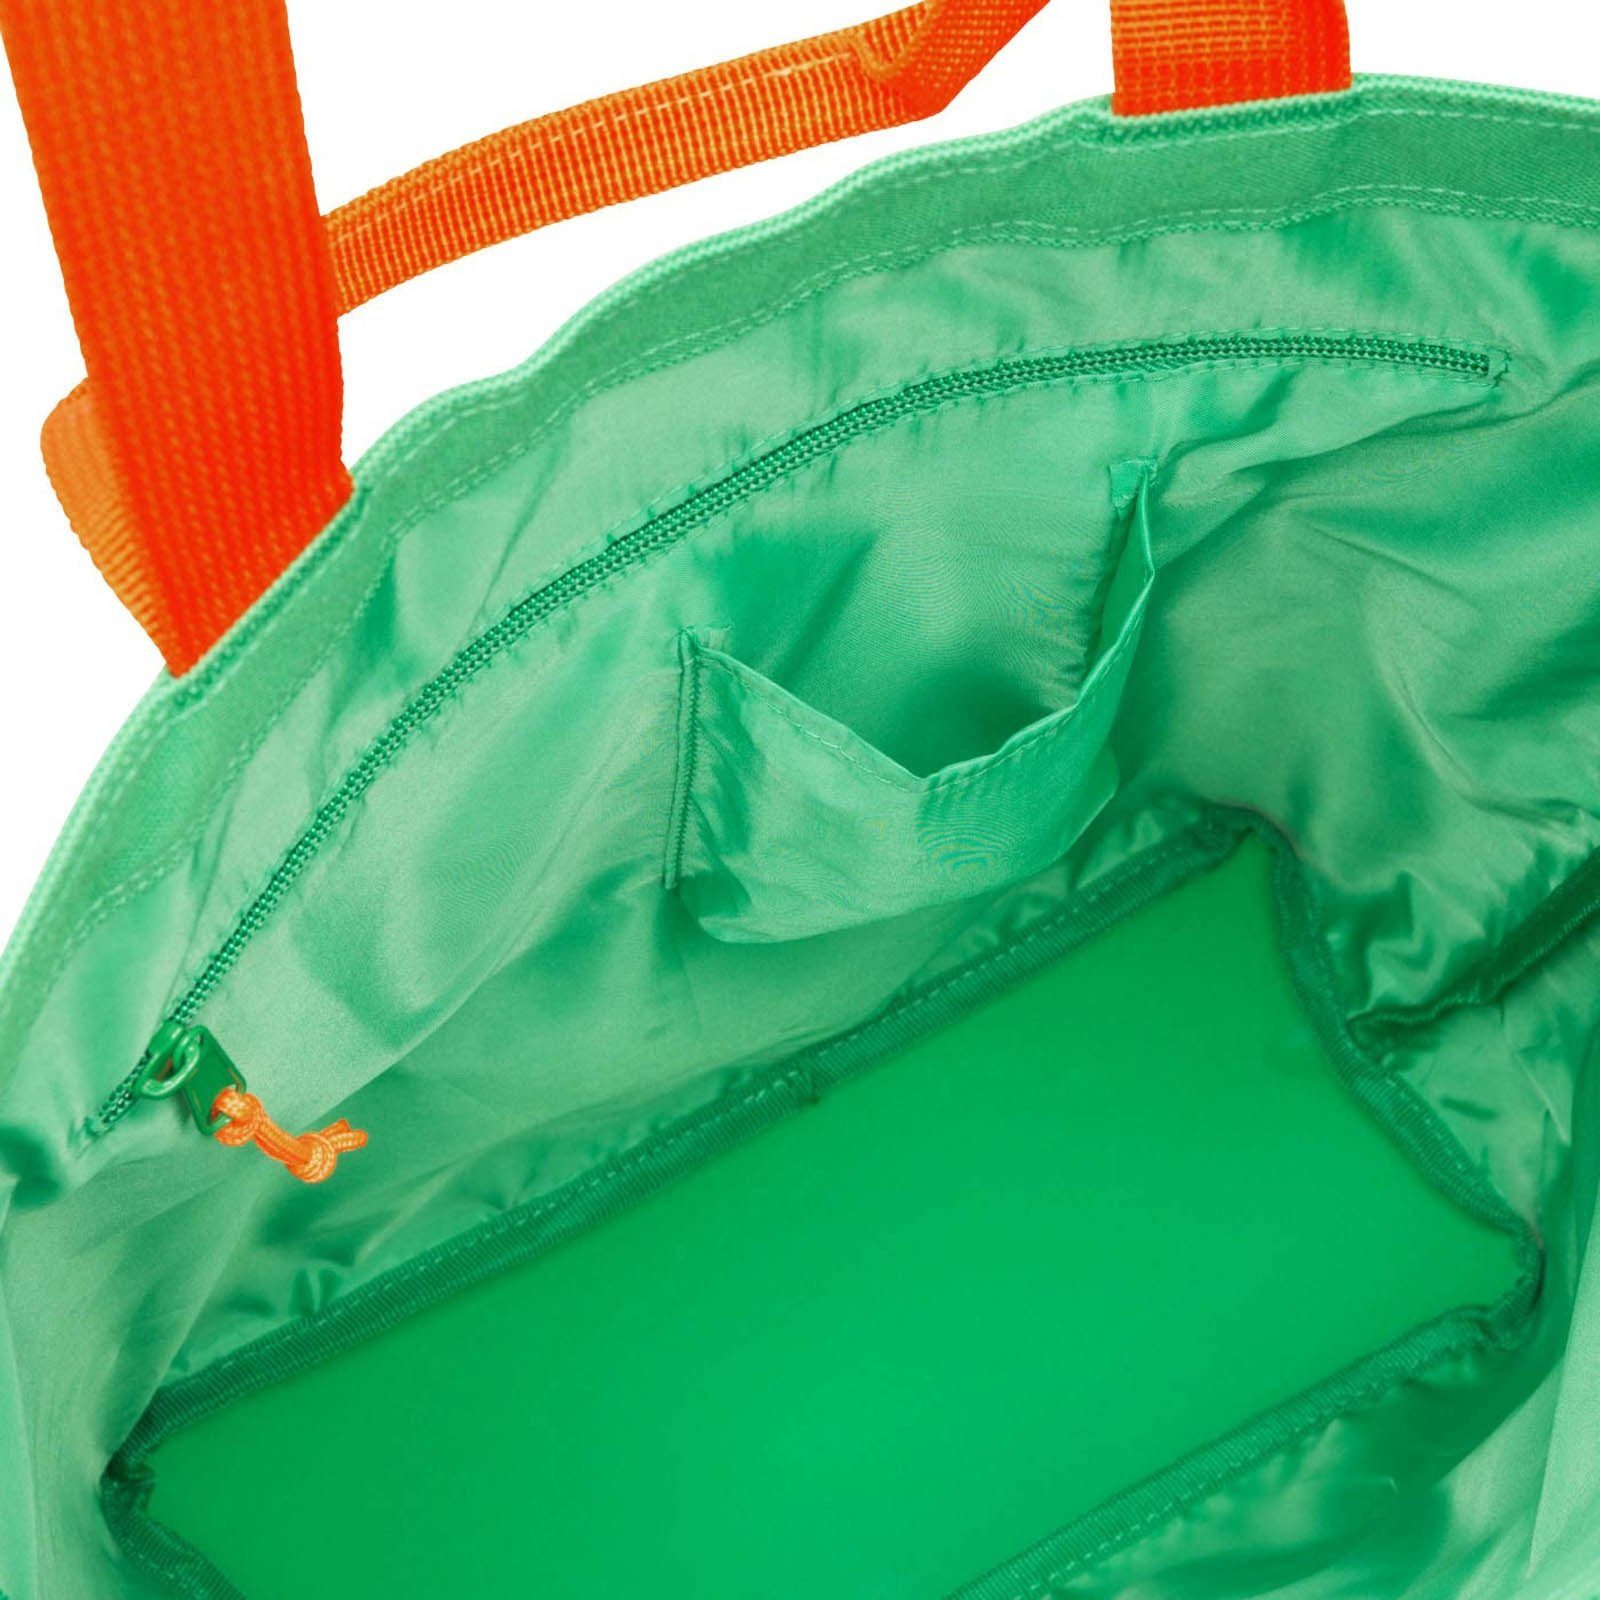 green summer Einkaufstasche KIDS REISENTHEL® Einkaufsbeutel familybag